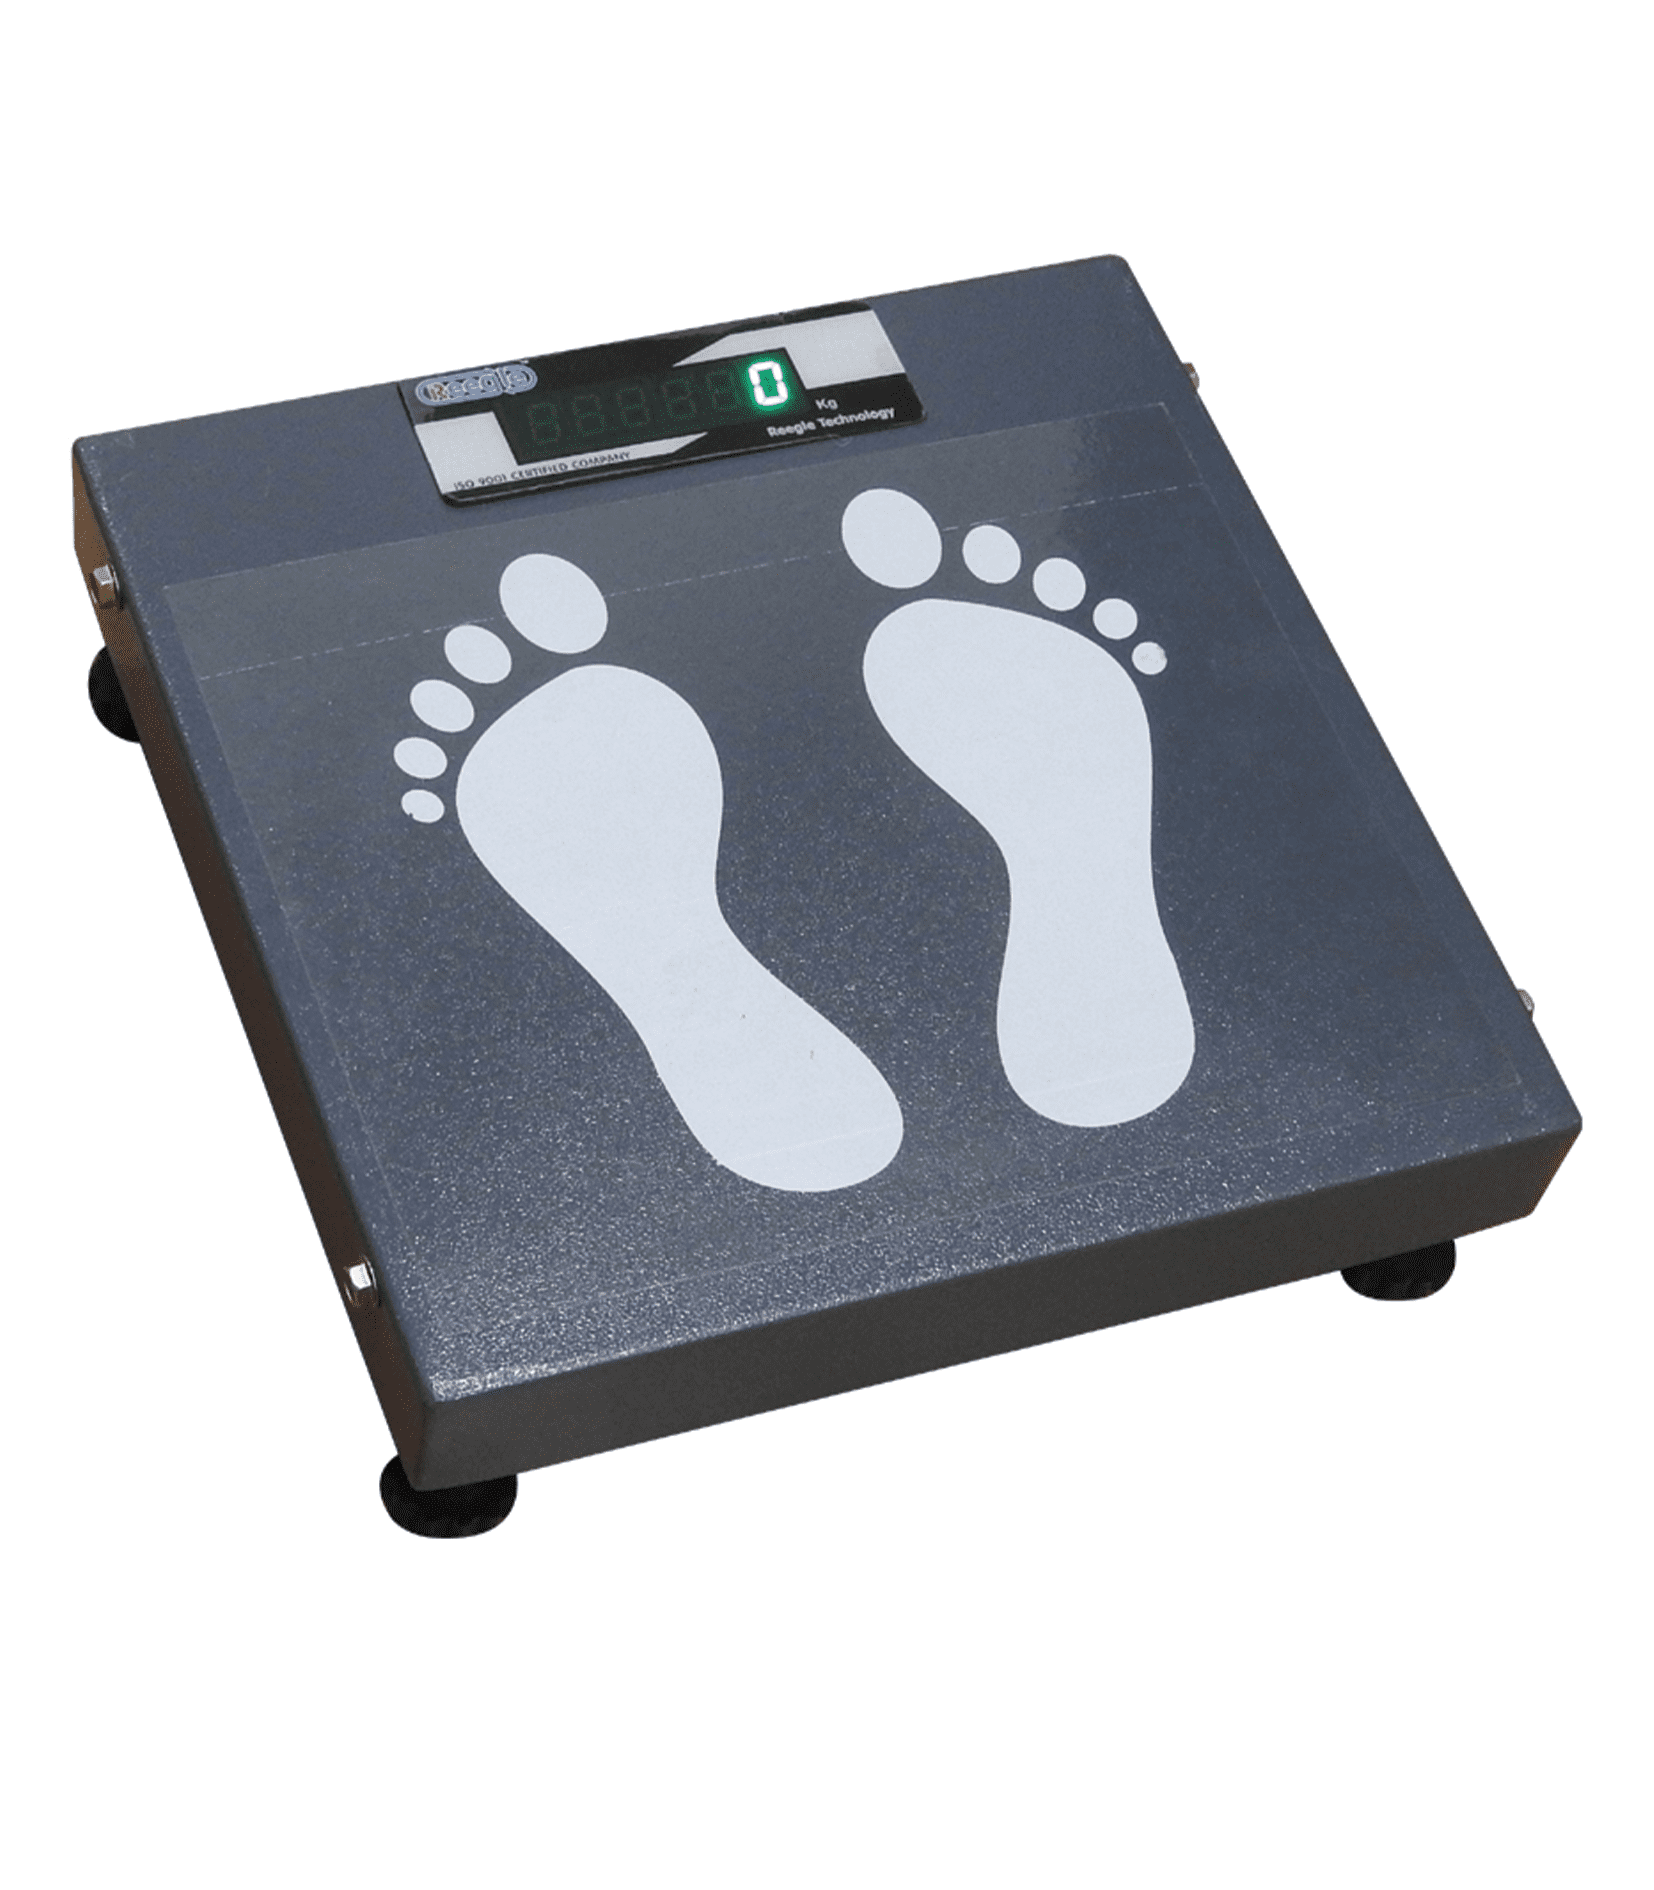 Digital weighing scales